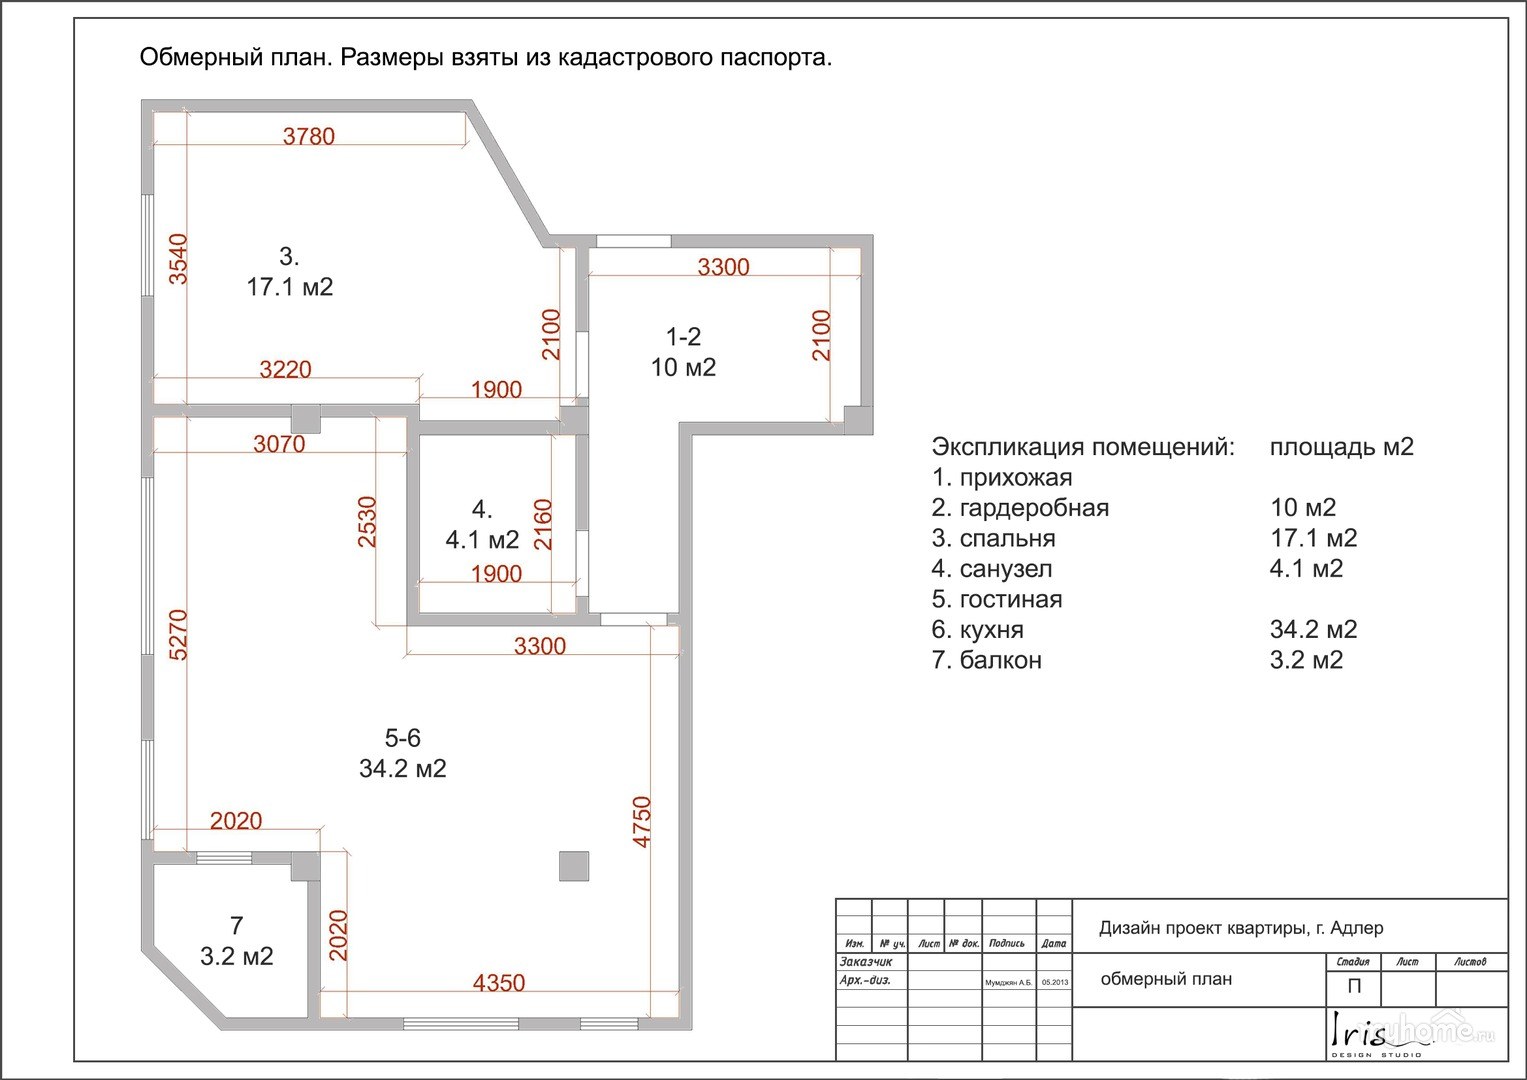 Обмерный план квартиры чертеж